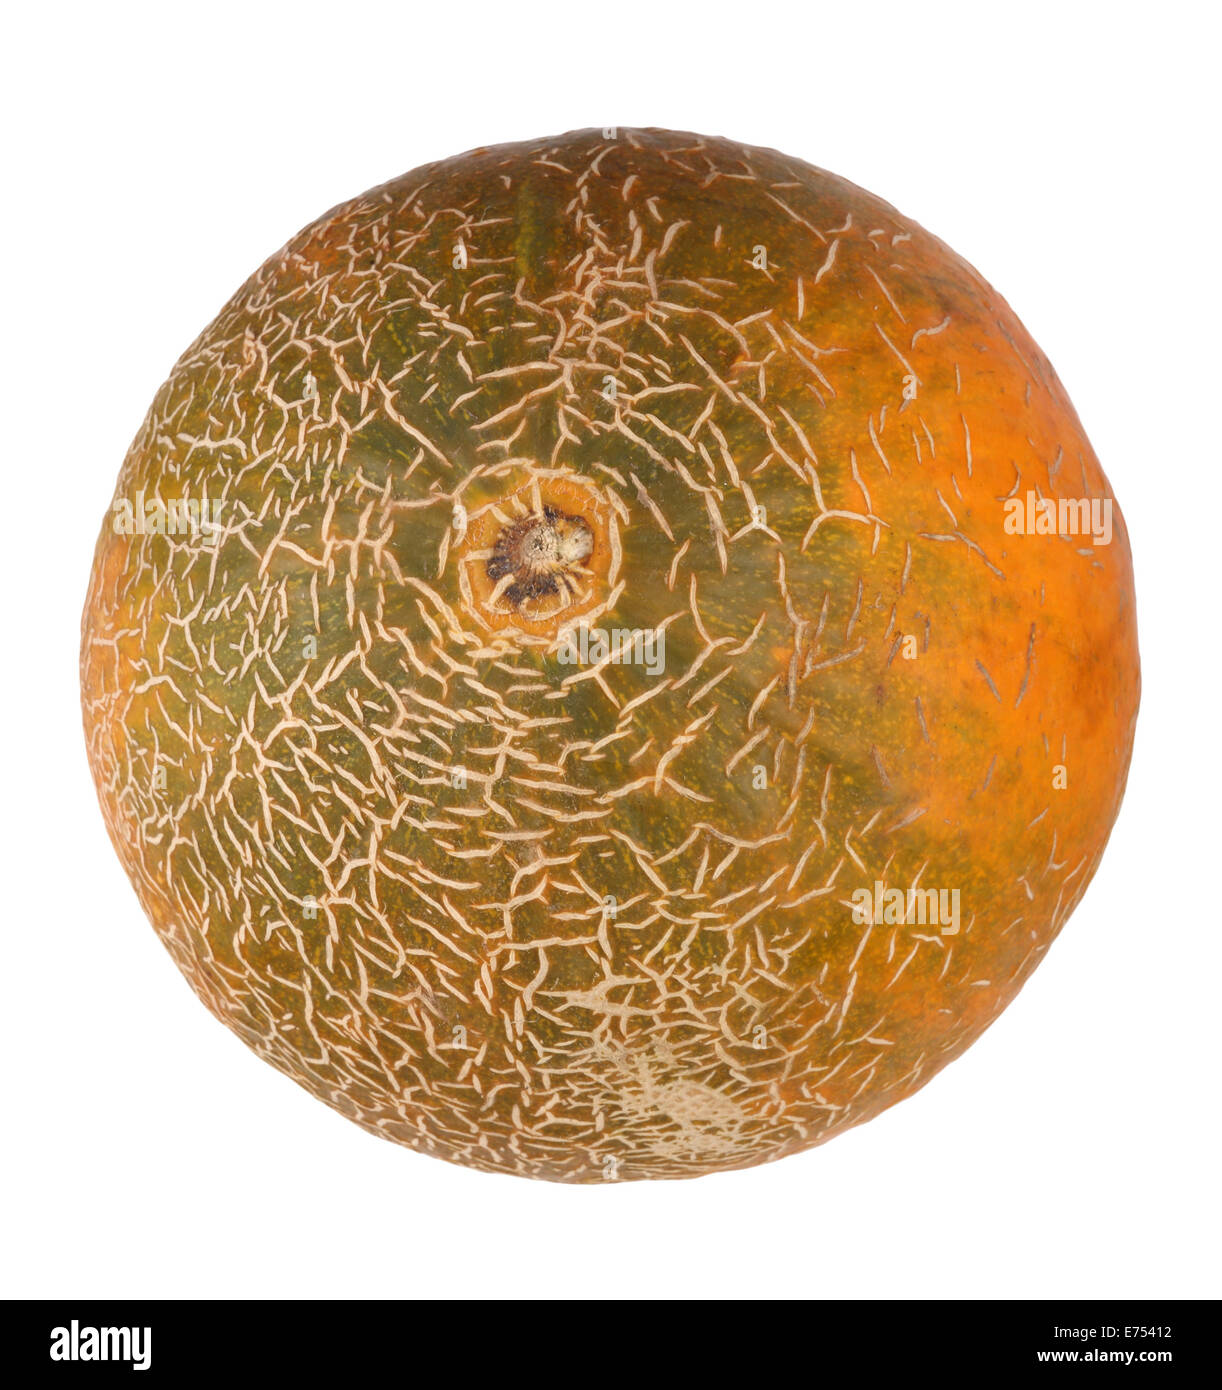 Melon Isolated Stock Photo